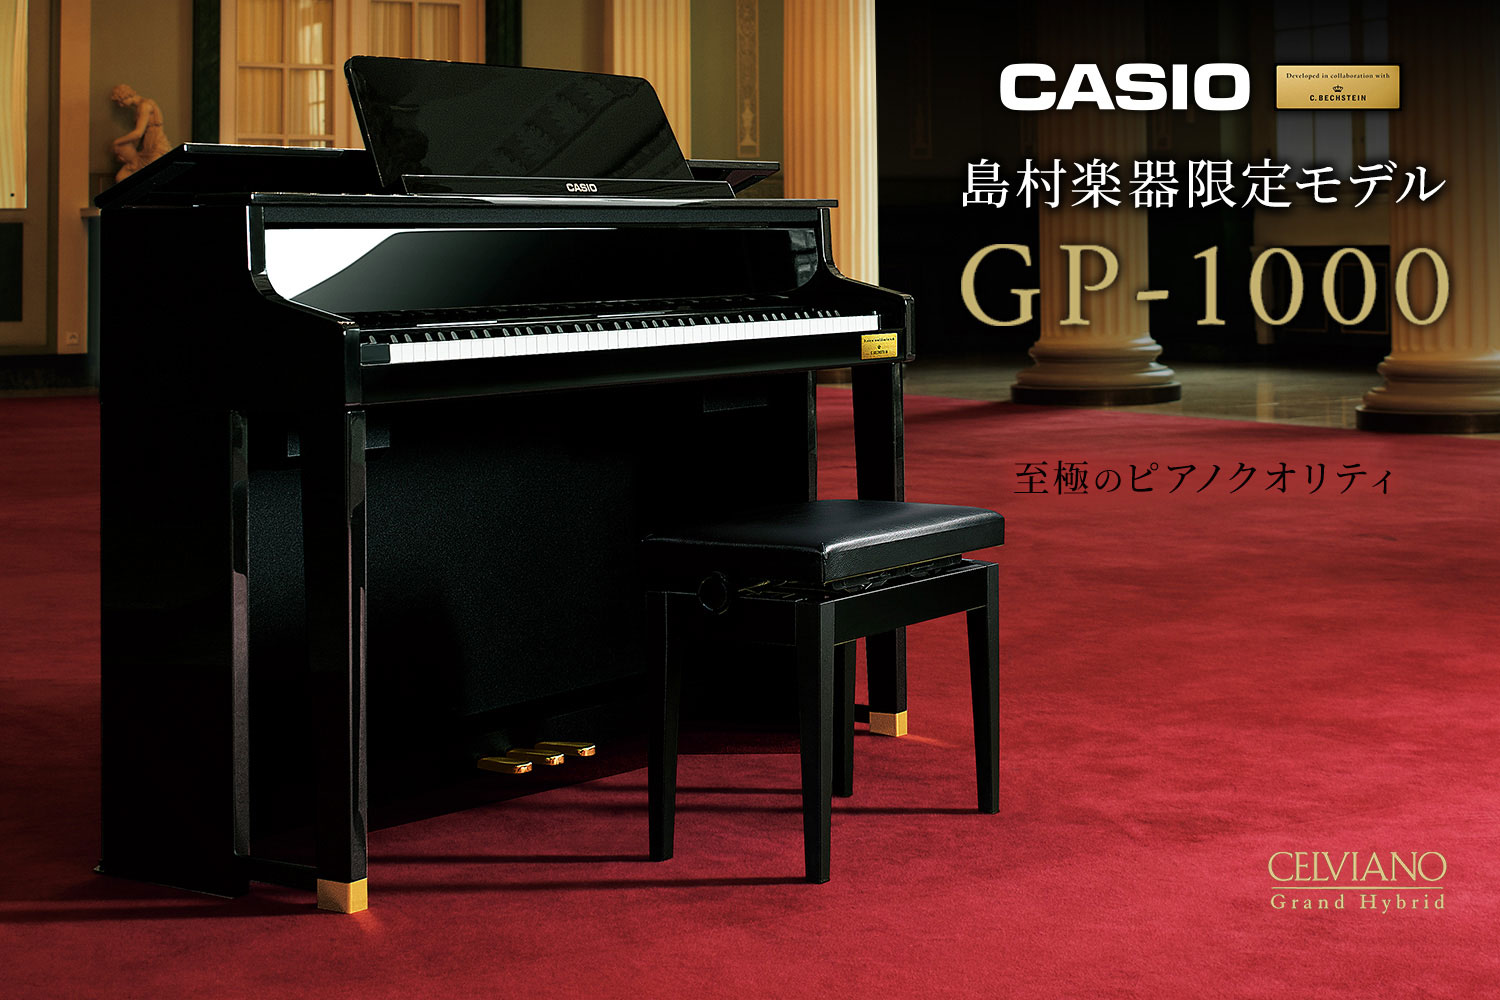 （ページ内の表記価格は2019年9月30日までのご利用料金となります） *グランドピアノに徹底的にこだわった至極のクオリティ ピアノ作りの伝統を徹底的に研究、そしてカシオの革新的なデジタル技術を投入した、カシオセルヴィアーノグランドハイブリッドシリーズ。世界有数の歴史あるピアノメーカーであるC.ベヒ […]